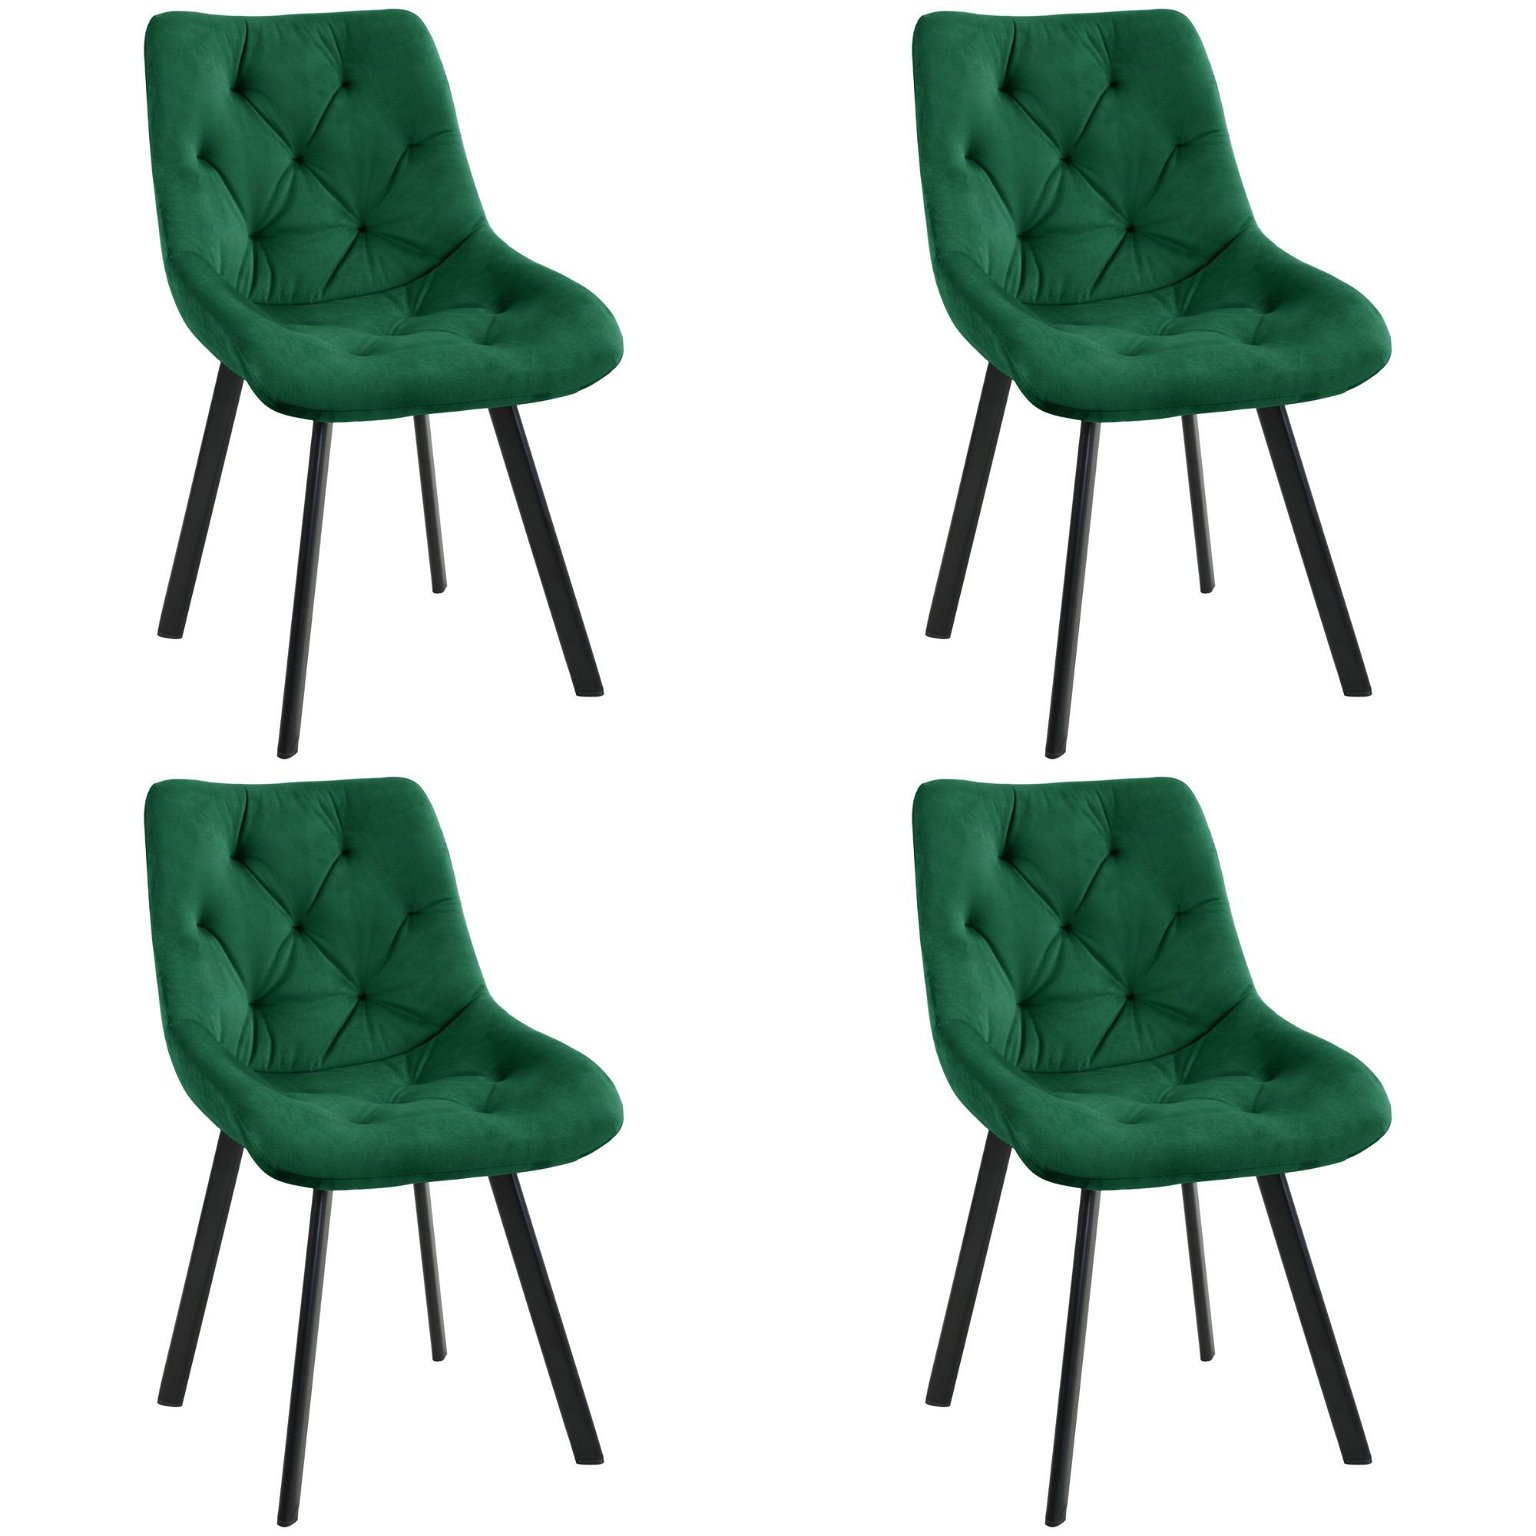 4-ių kėdžių komplektas SJ.33, žalia - 1